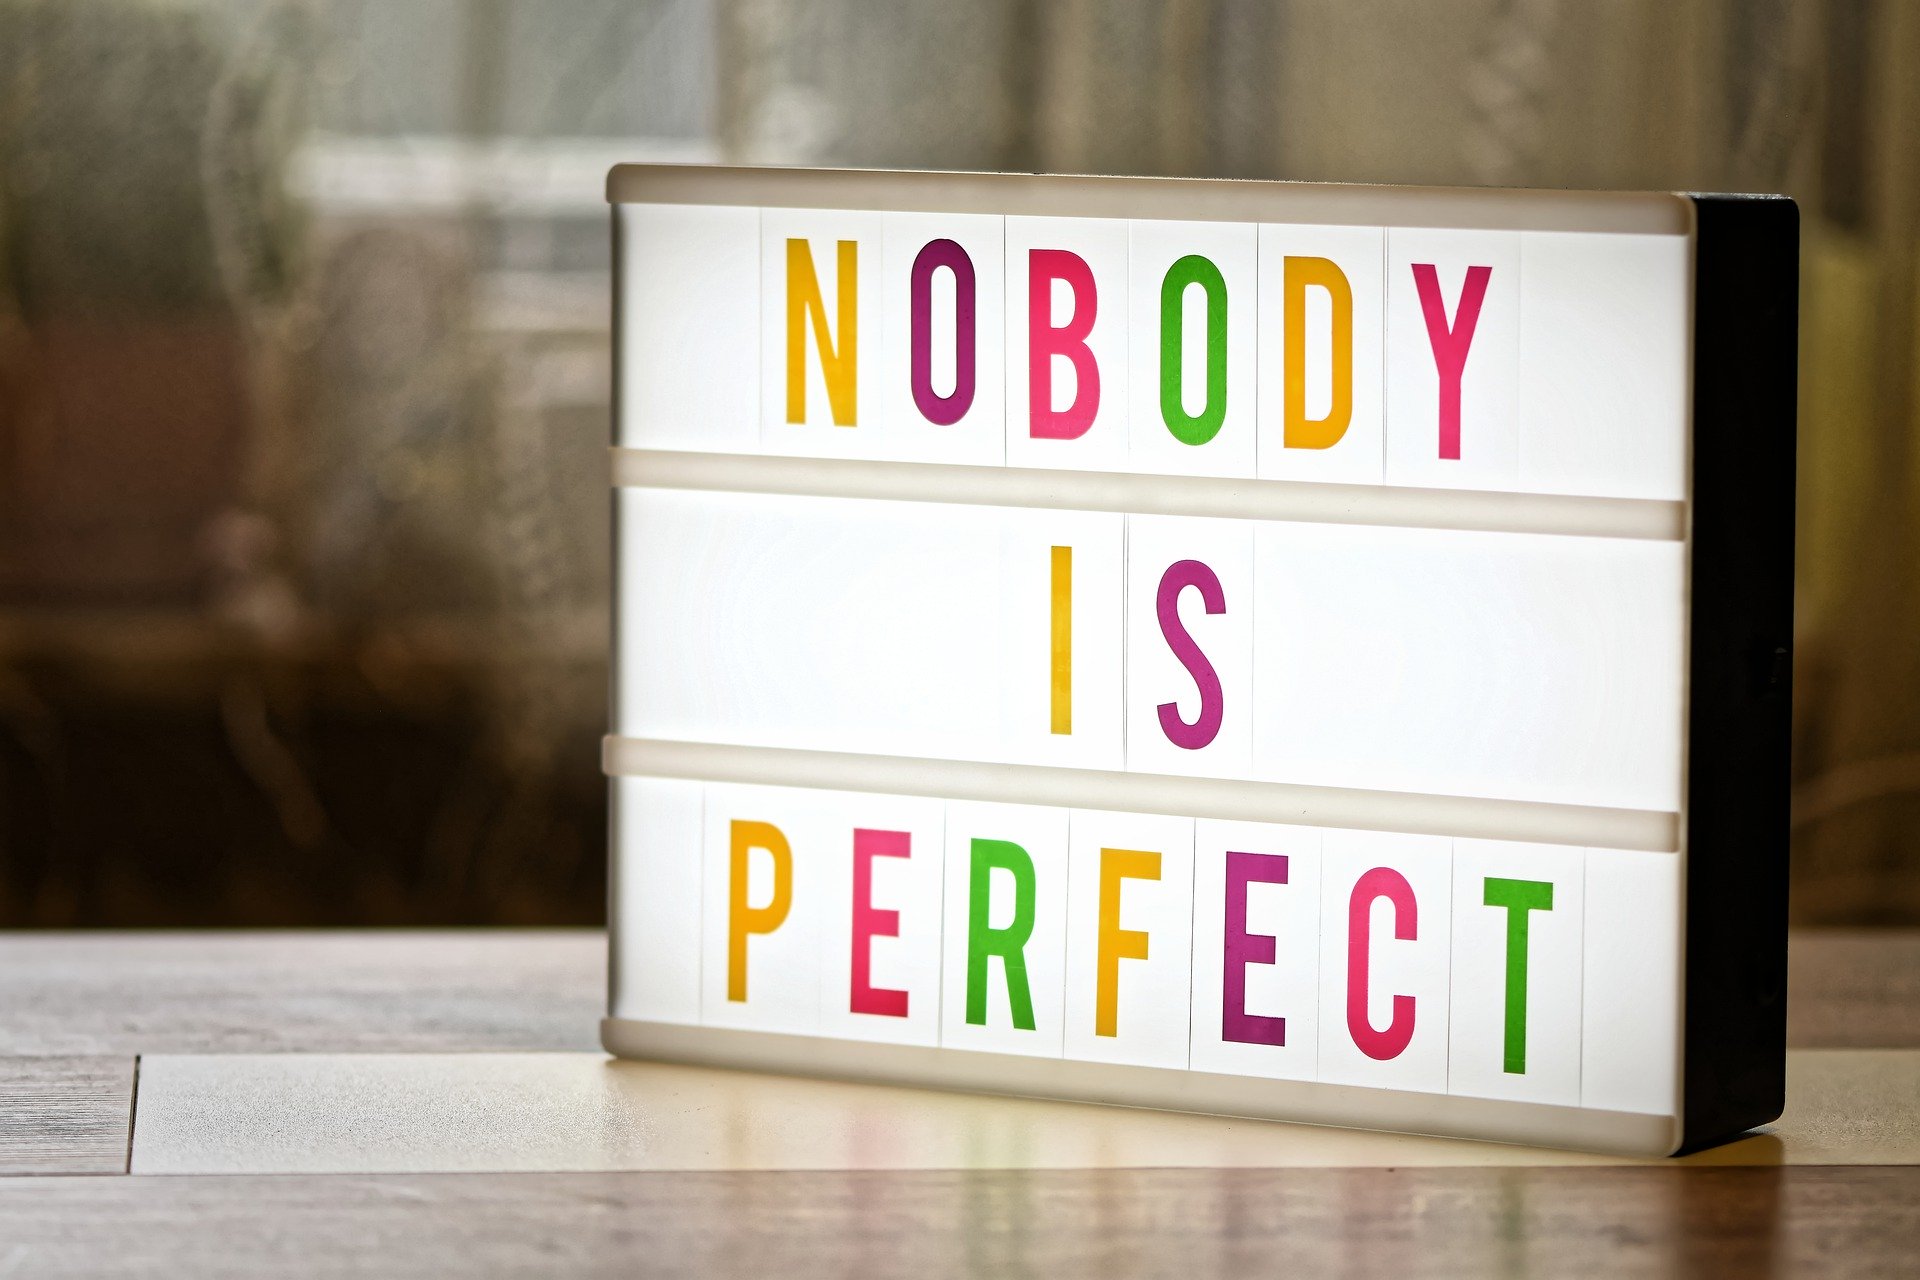 Auf einem Tisch ein Schild mit Aufschrift "NOBODY IS PERFECT".